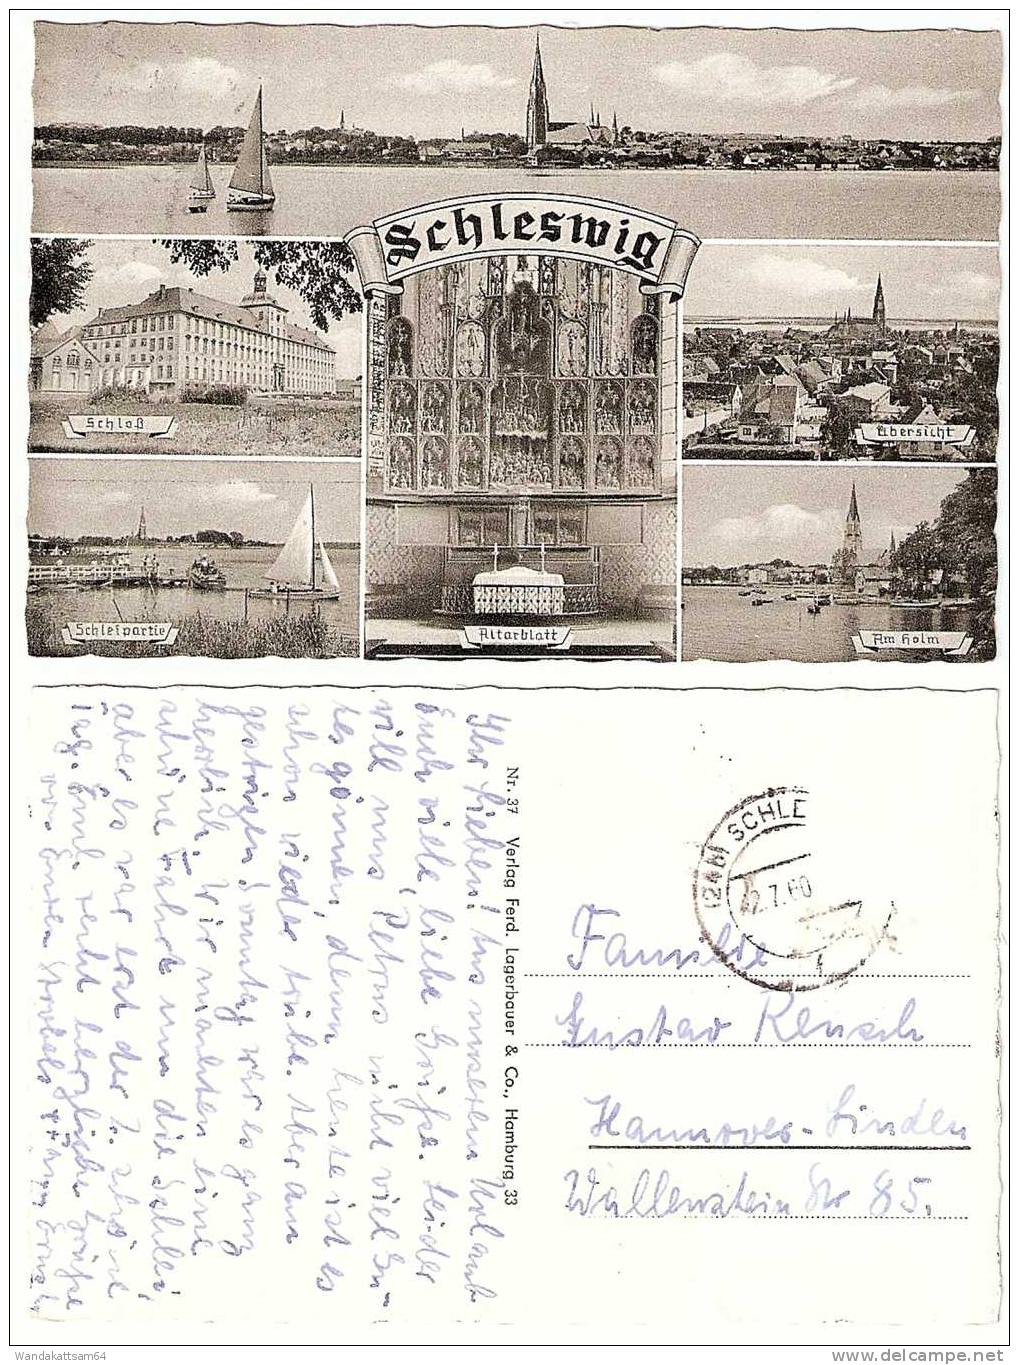 AK Nr. 37 Schleswig MBK 6 Bilder Schloß Schleipartie Am Holm 2.7.60 (24b) SCHLE Nach Hannover-Linden Briefmarke Entfernt - Schleswig